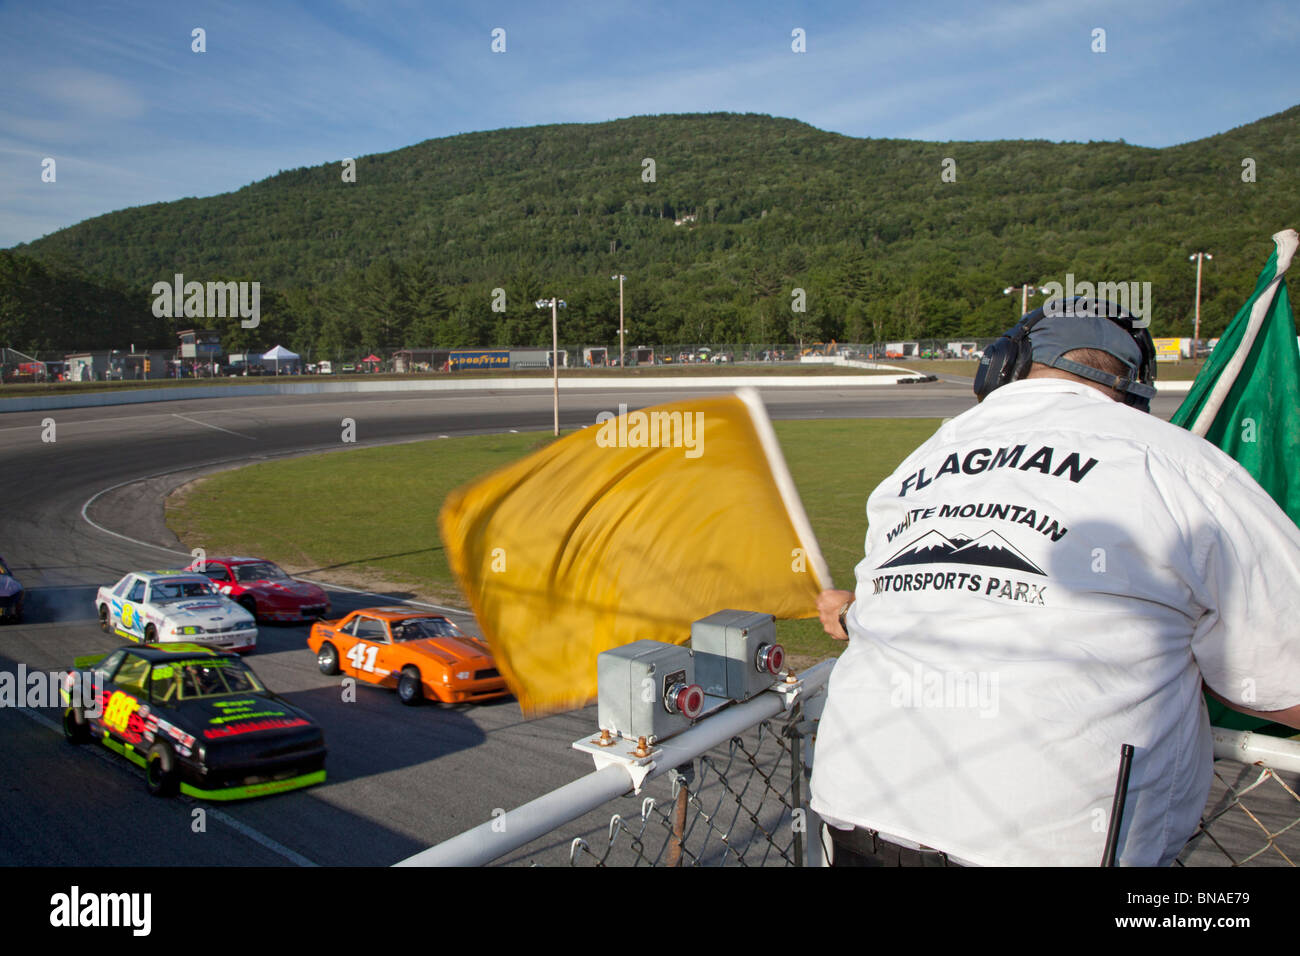 Woodstock, New Hampshire - le signaleur vagues drapeaux signal pendant les courses de voitures à White Mountain Motorsports Park. Banque D'Images